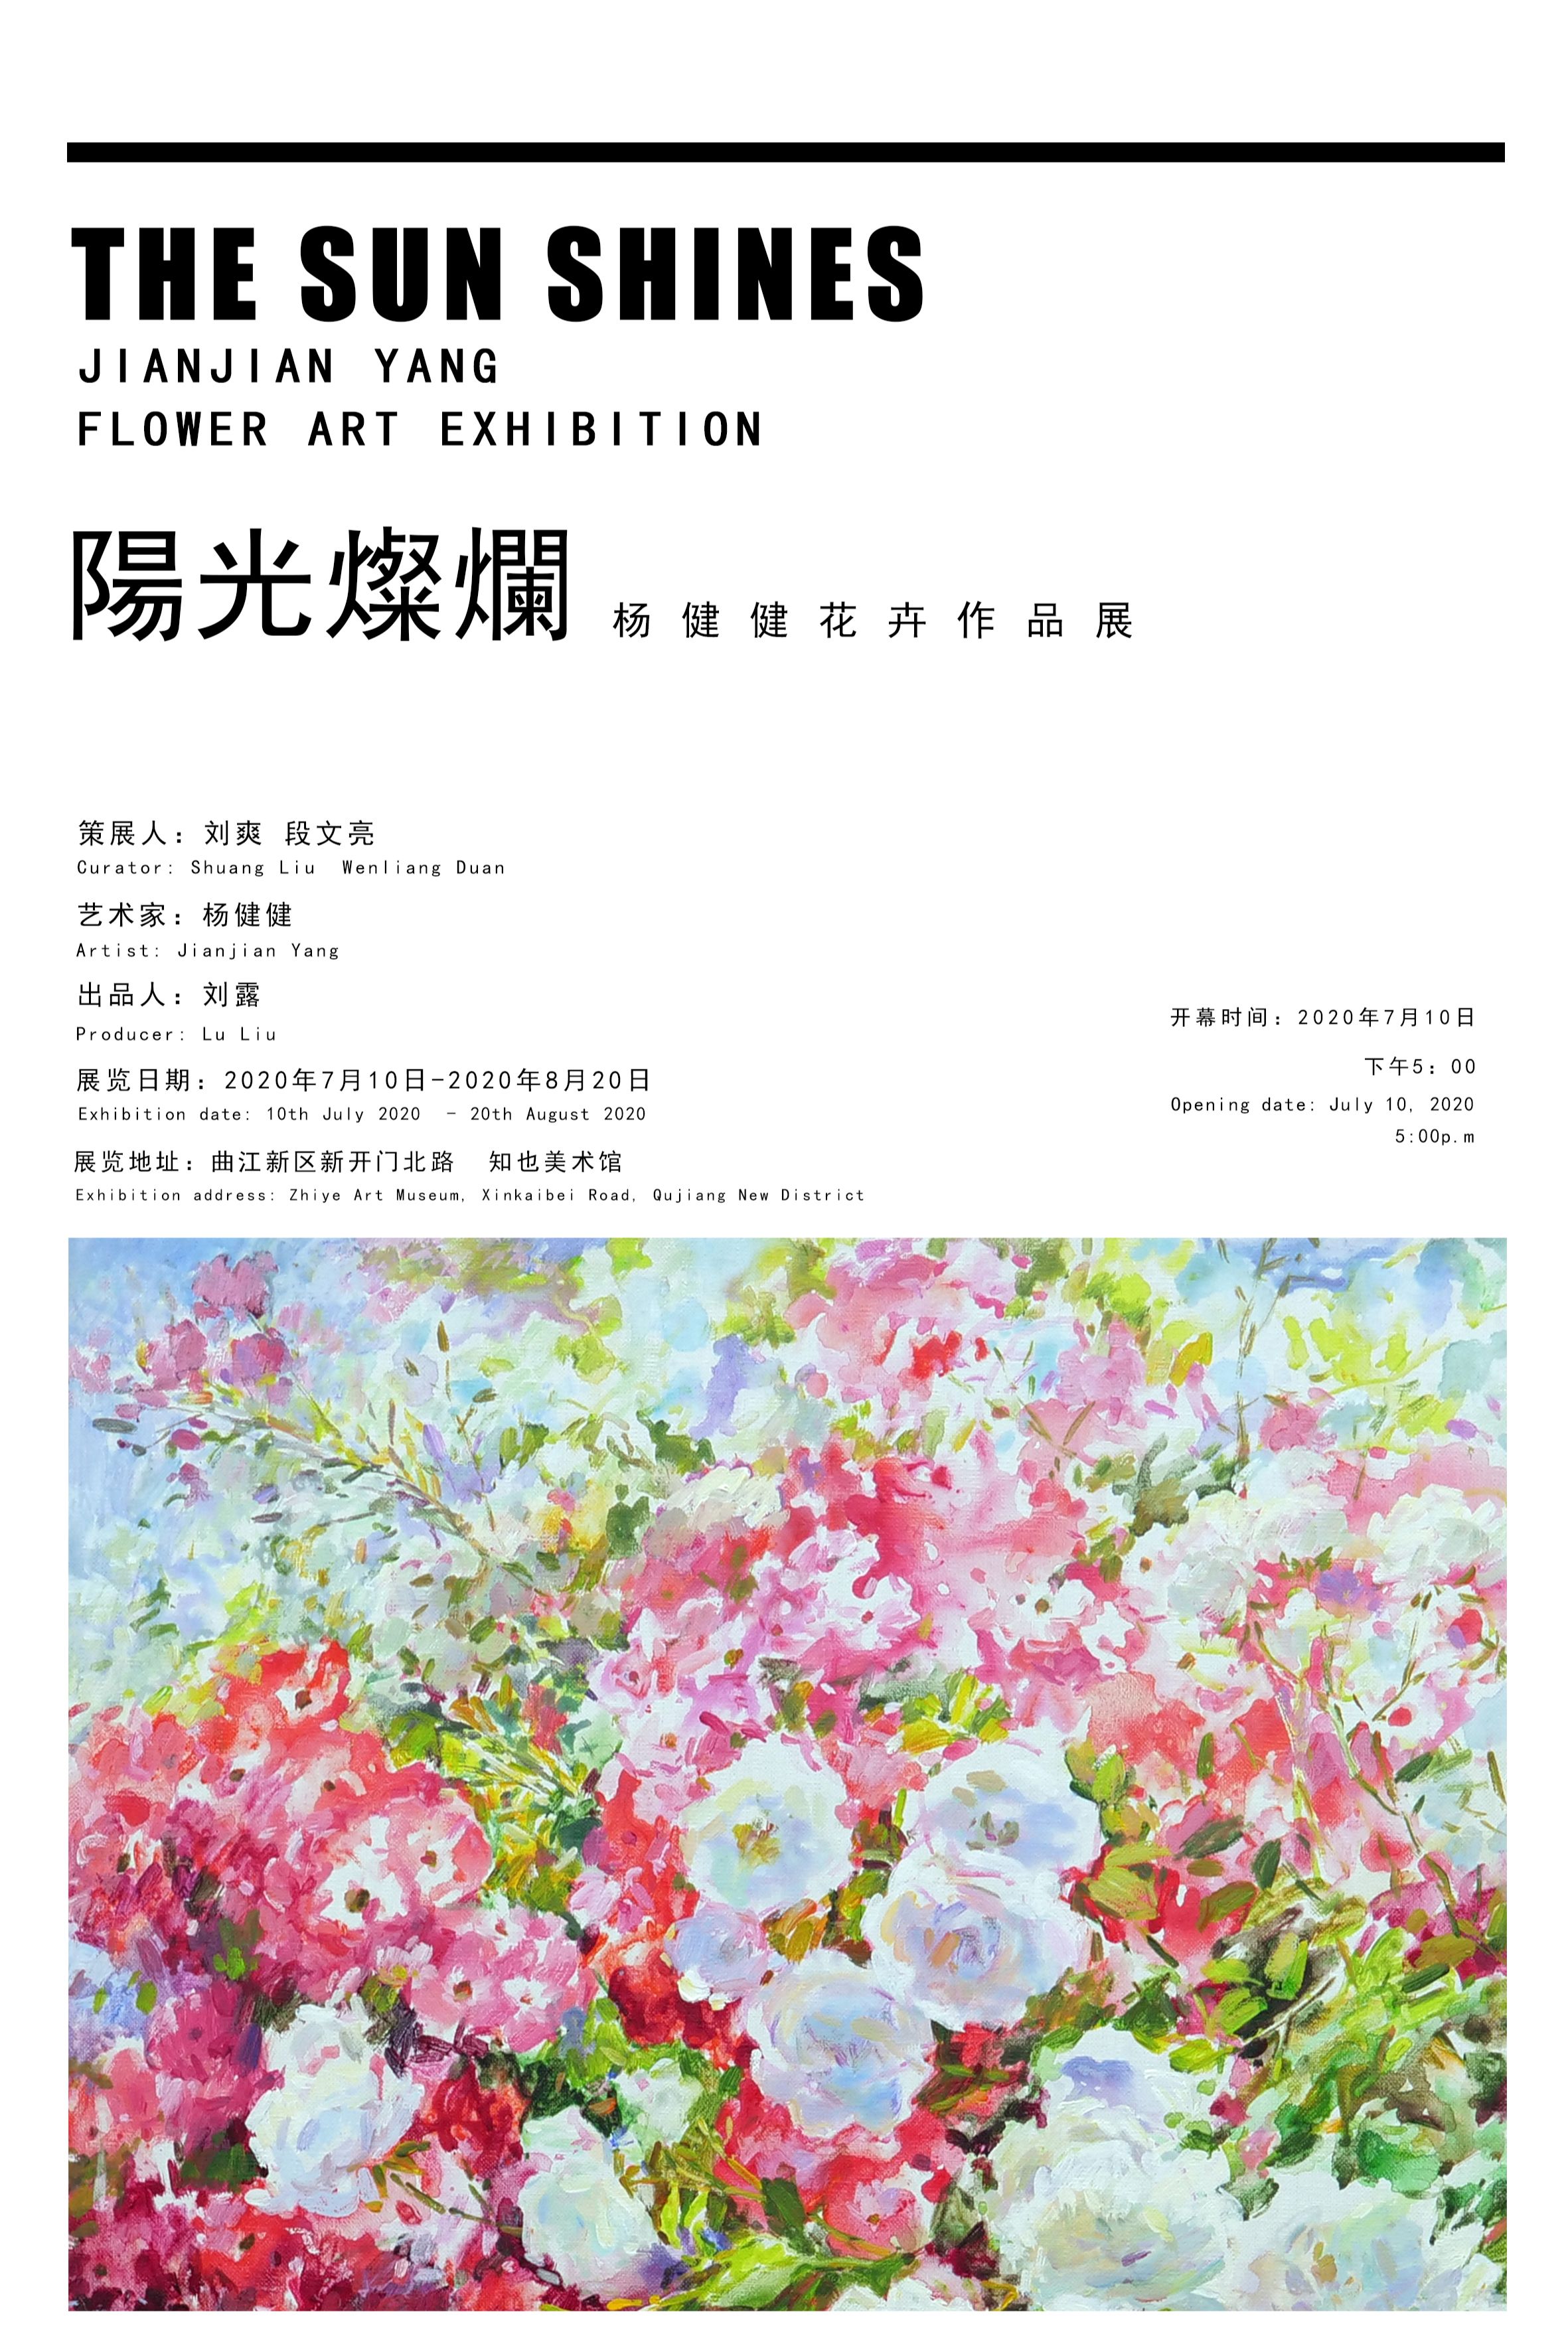 阳光灿烂 杨健健花卉作品展 在线展览 画廊展览 雅昌展览